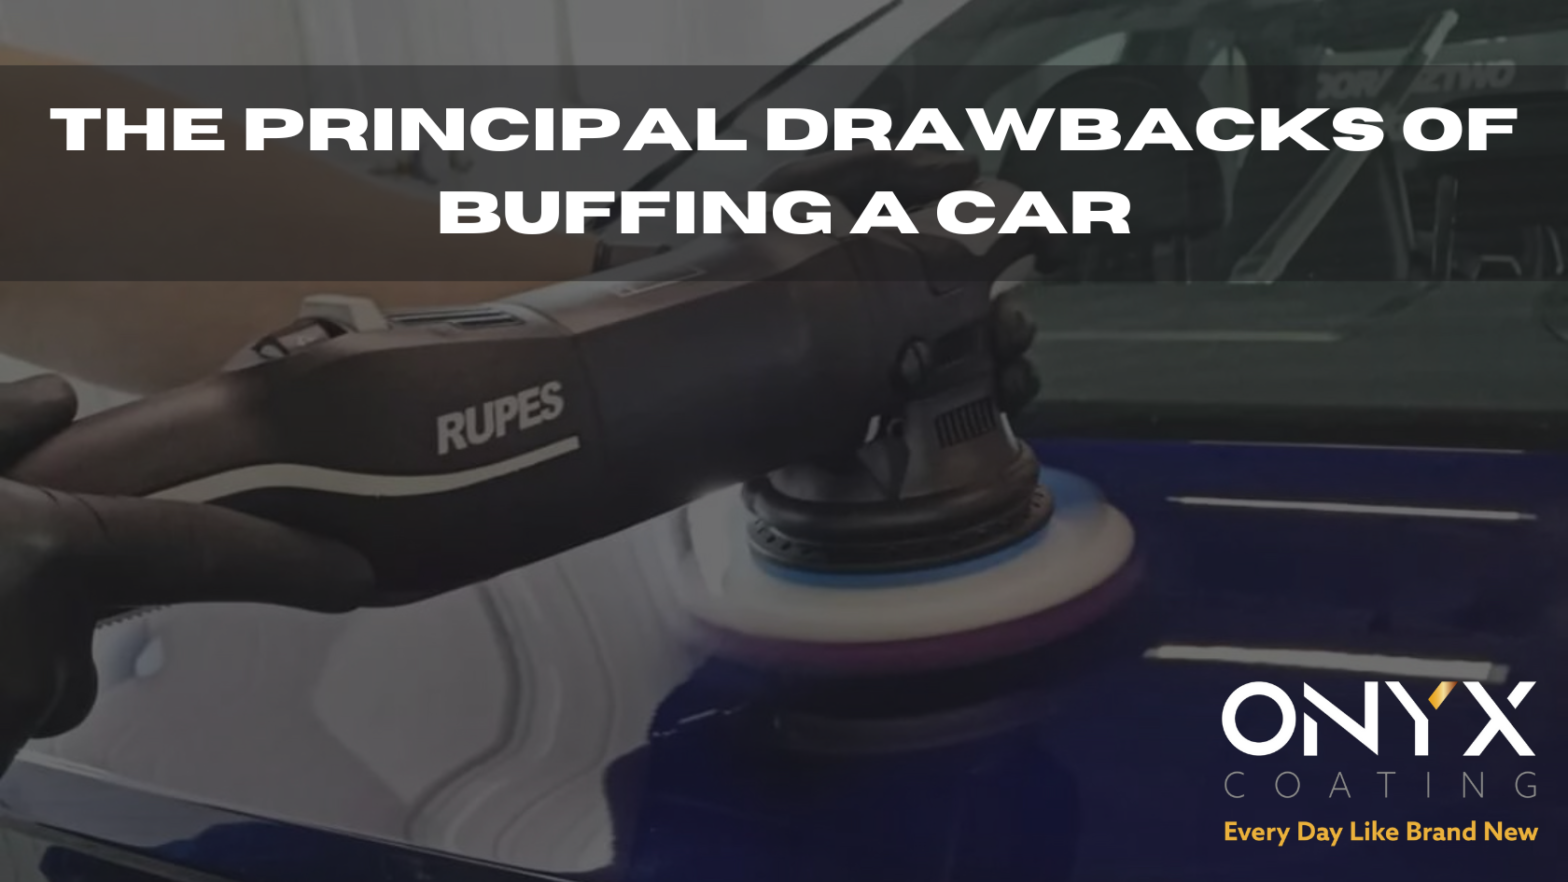 The principal drawbacks of buffing a car